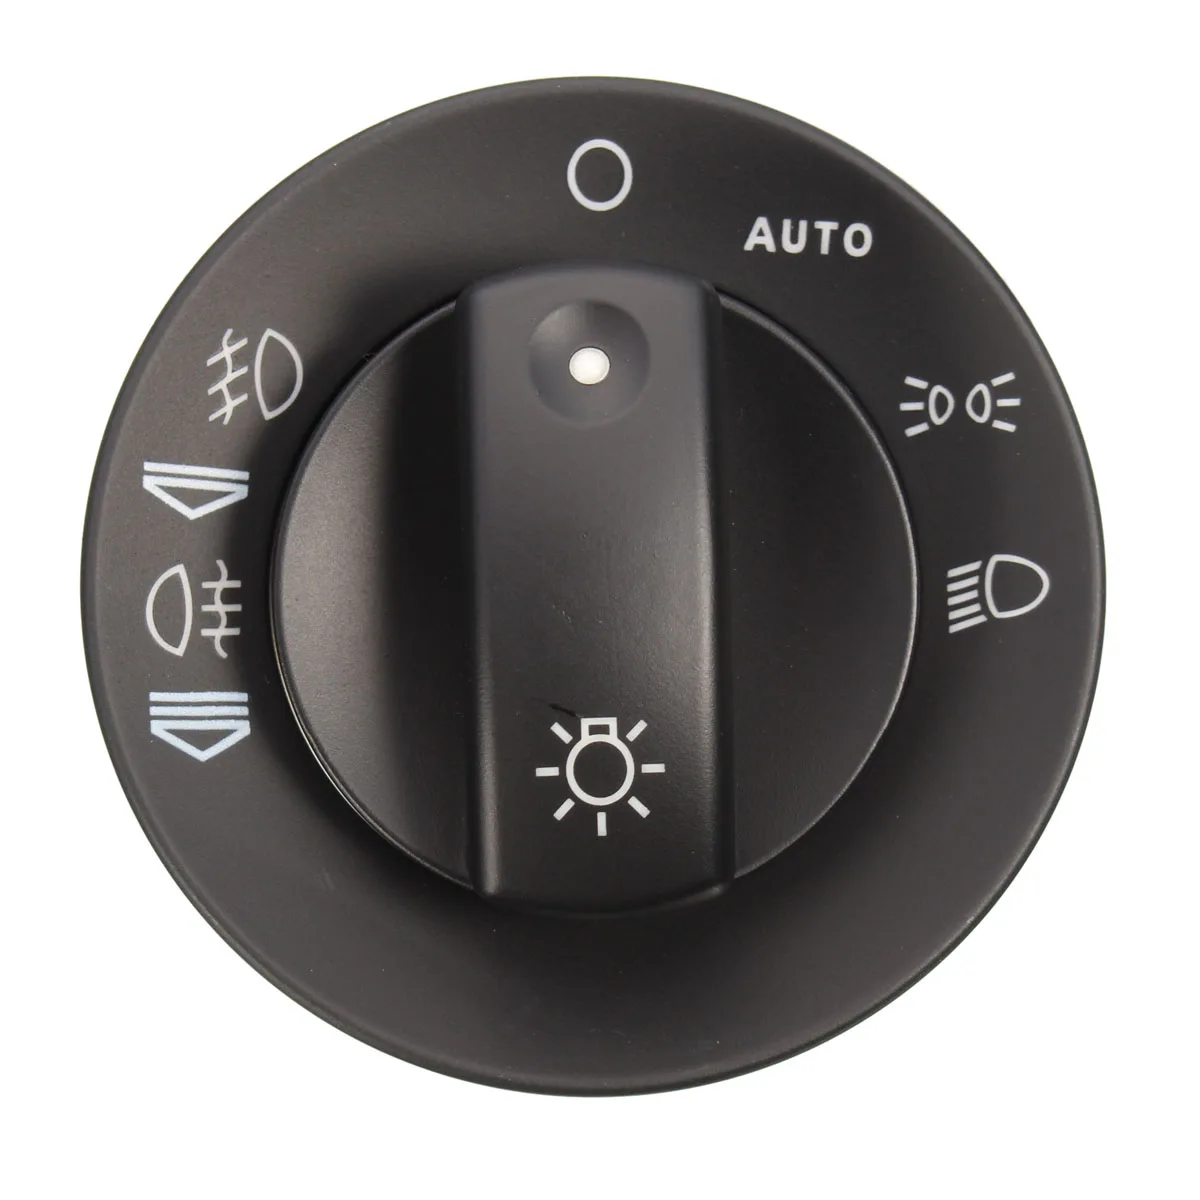 Gorgeri Cubierta del interruptor de la luz antiniebla del coche cubierta de reparación del interruptor del control de la luz antiniebla del faro apto para A4 S4 8E B6